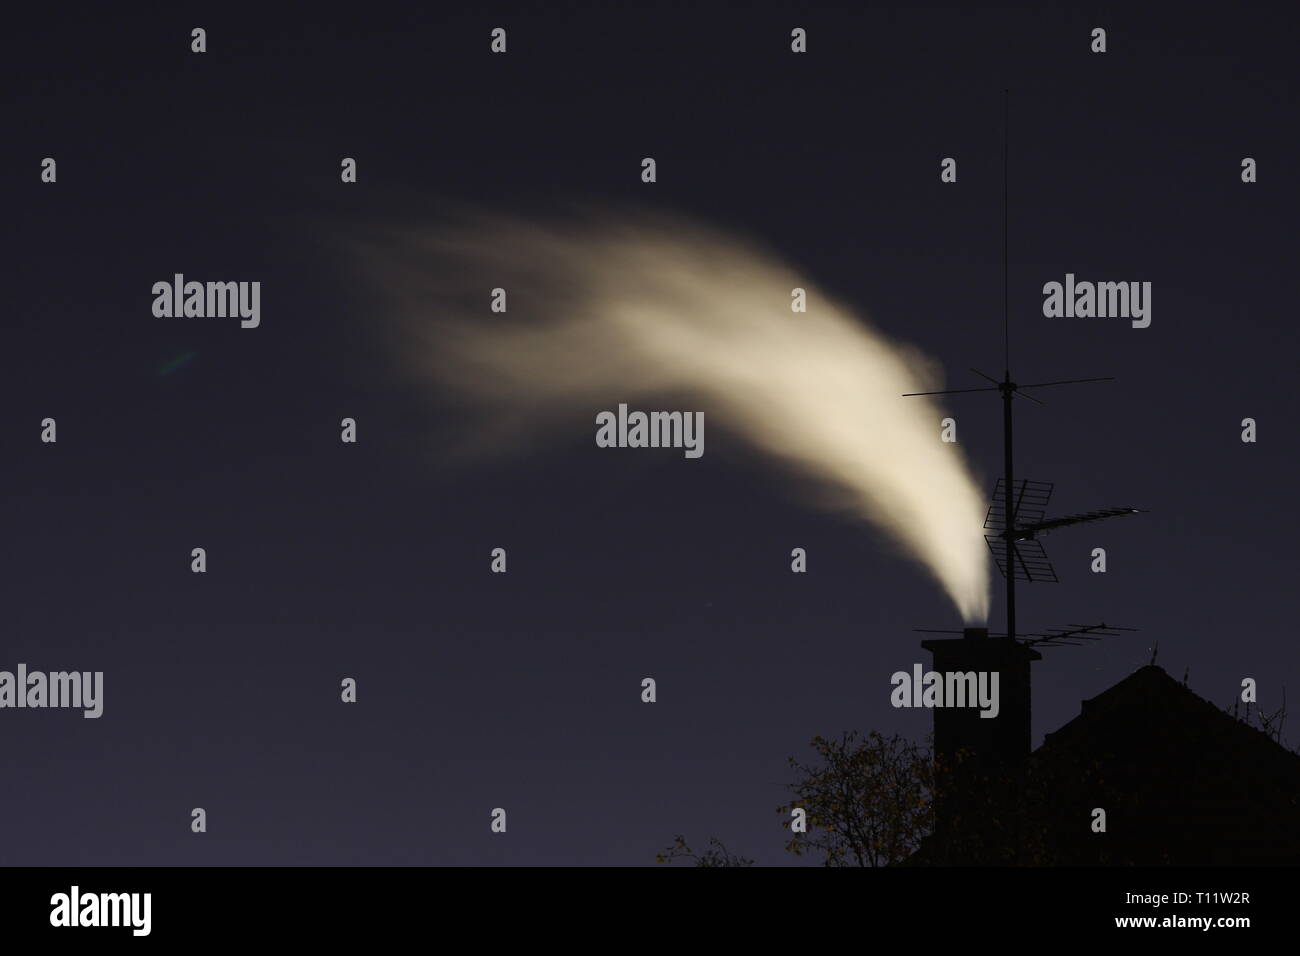 La exposición a largo plazo de una chimenea en la noche con la emisión de humo Foto de stock